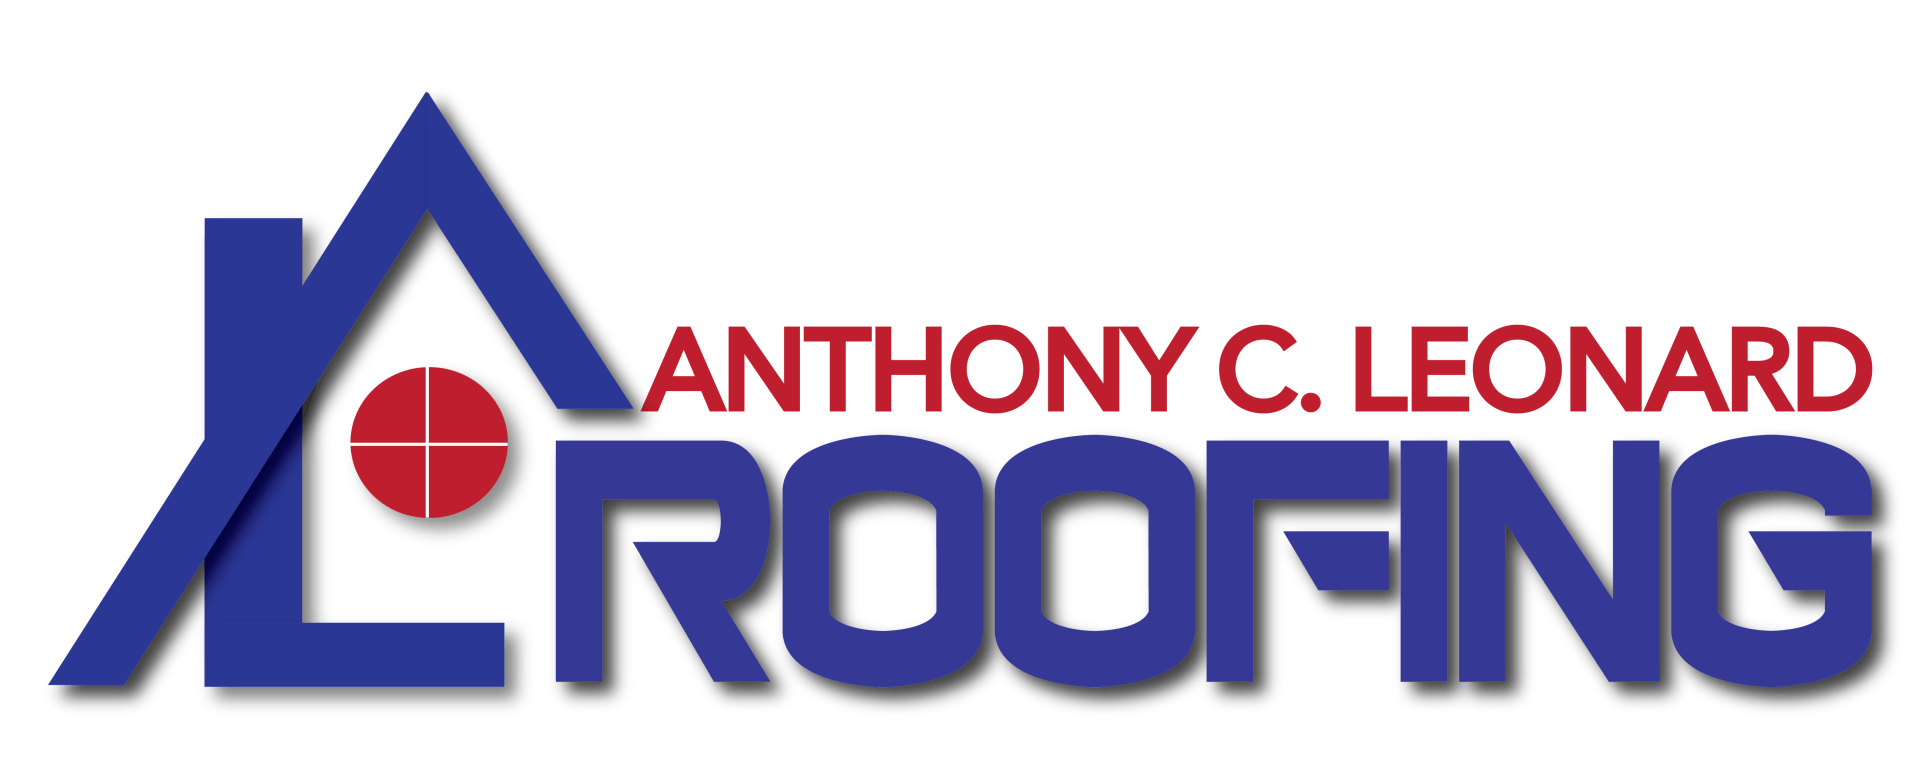 Anthony C Leonard Roofing - LOGO